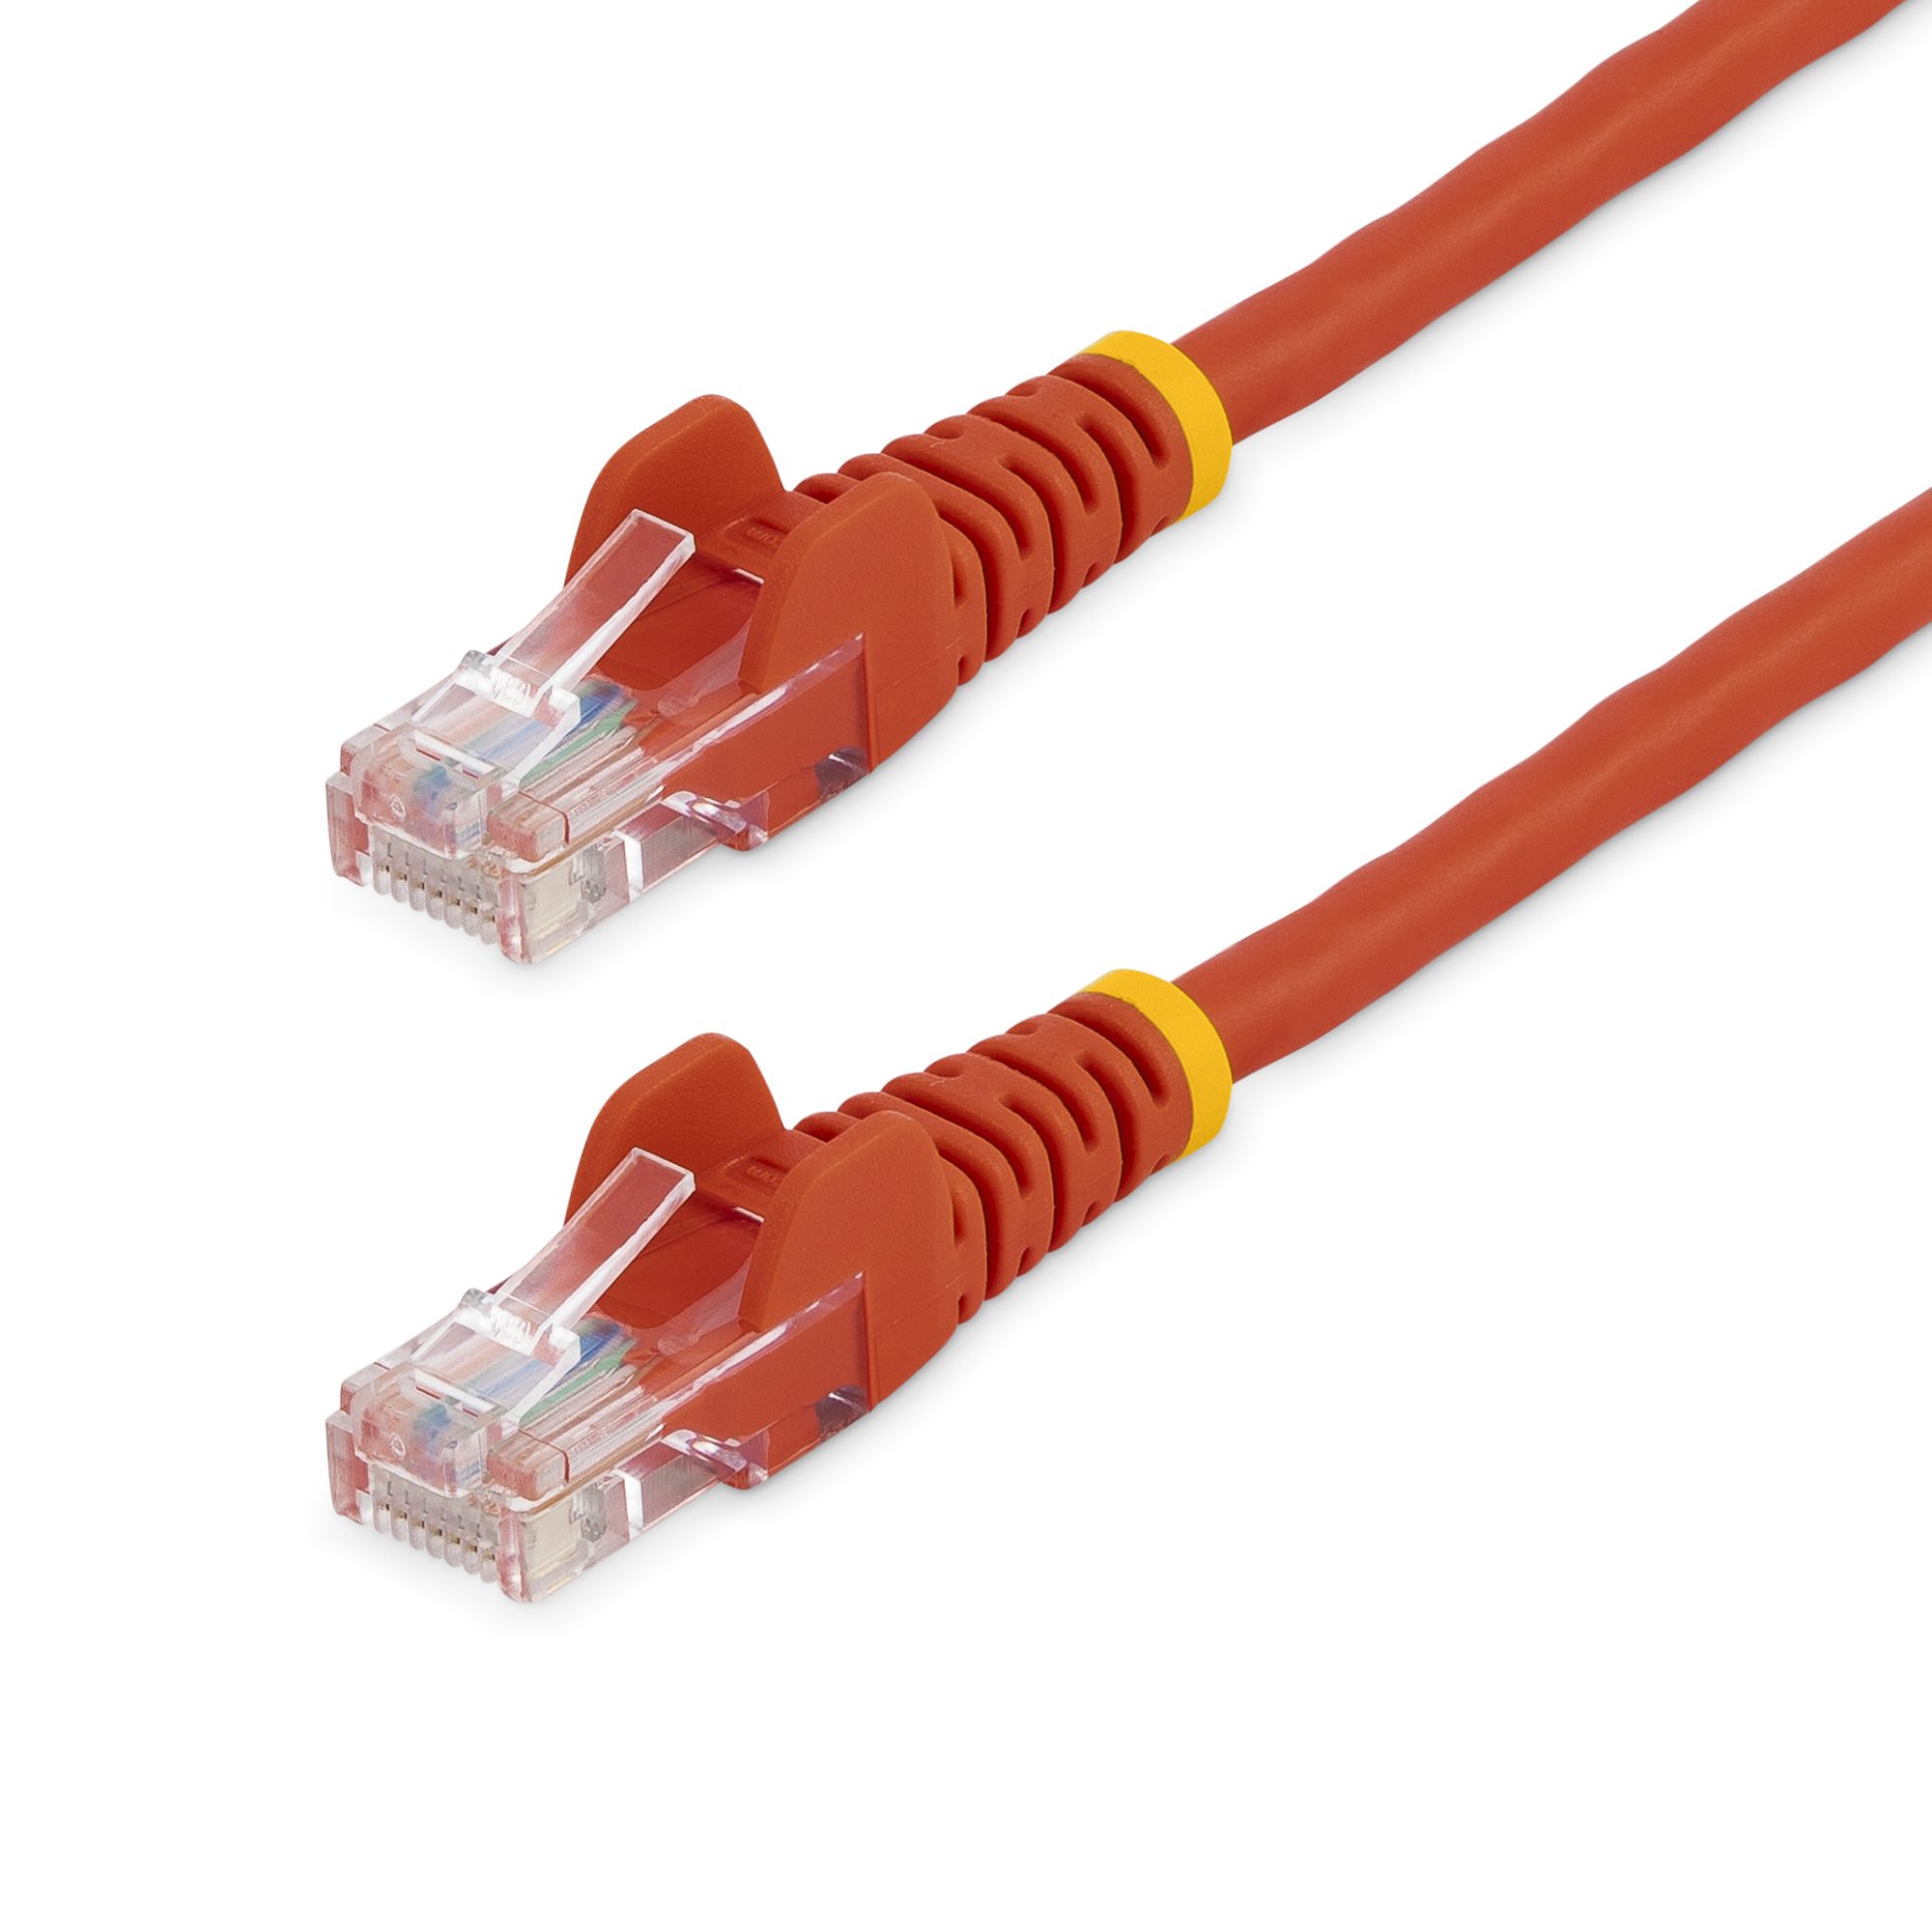 Cable de red RJ45 UTP Cat5e Ethernet / Patch cord de 5 metros